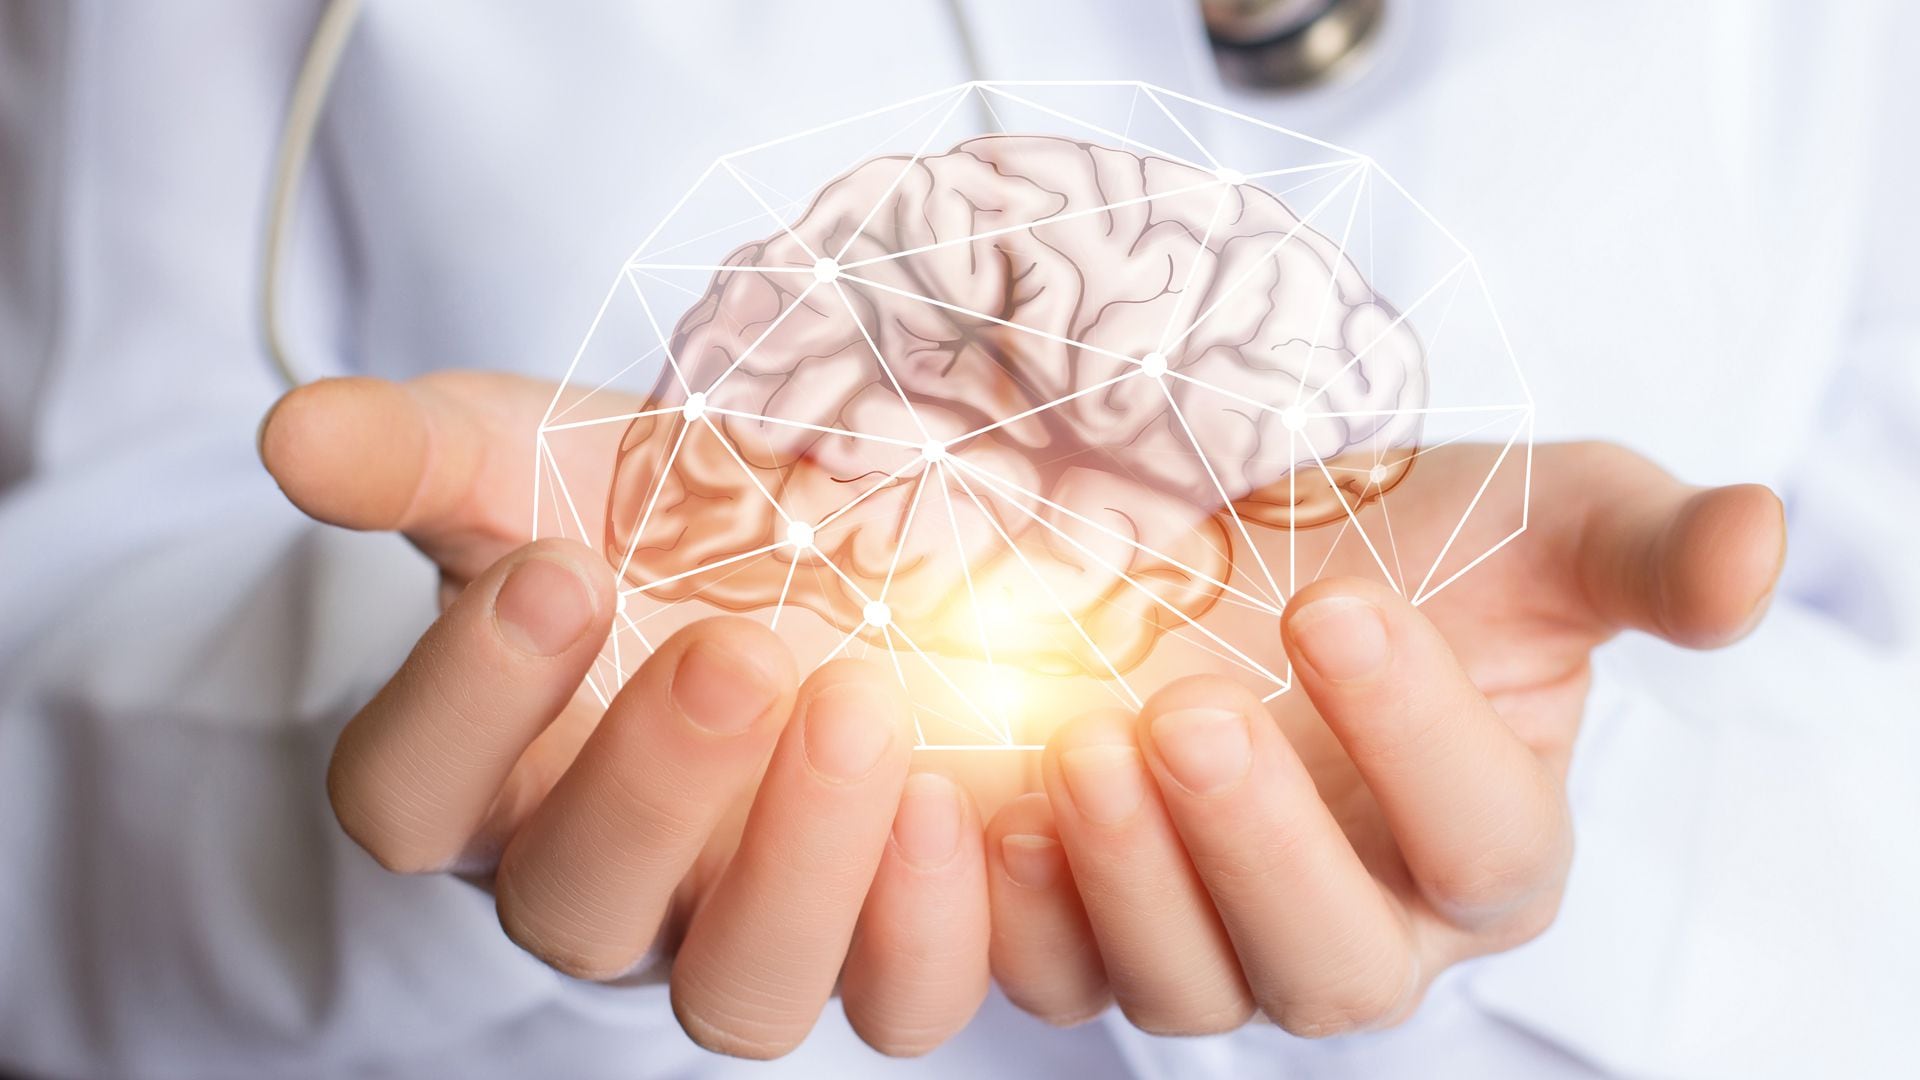 Los científicos descifraron los mecanismos detrás de la disfunción cognitiva y el deterioro motor en enfermedades neurológicas, según informaron
(Getty)